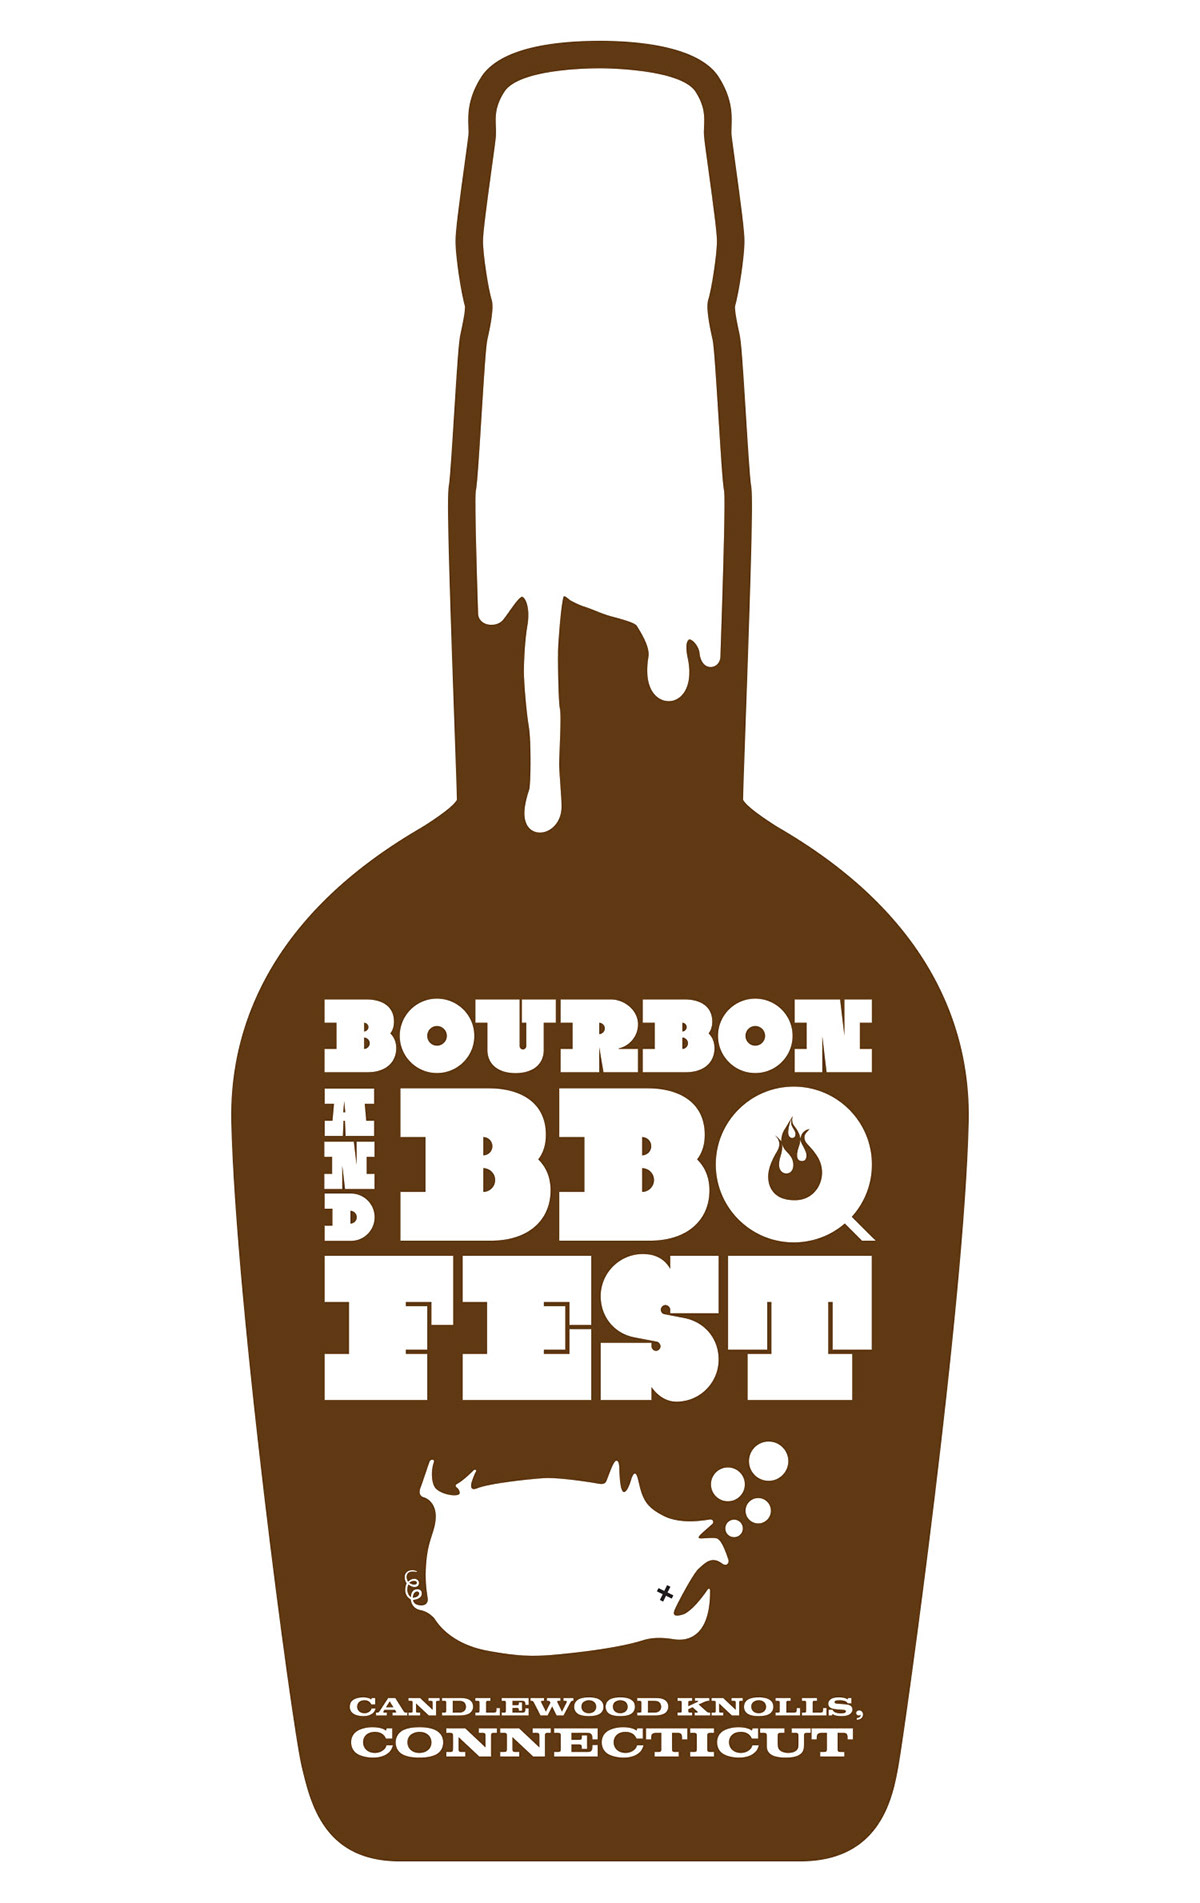 design logo BBQ tshirt